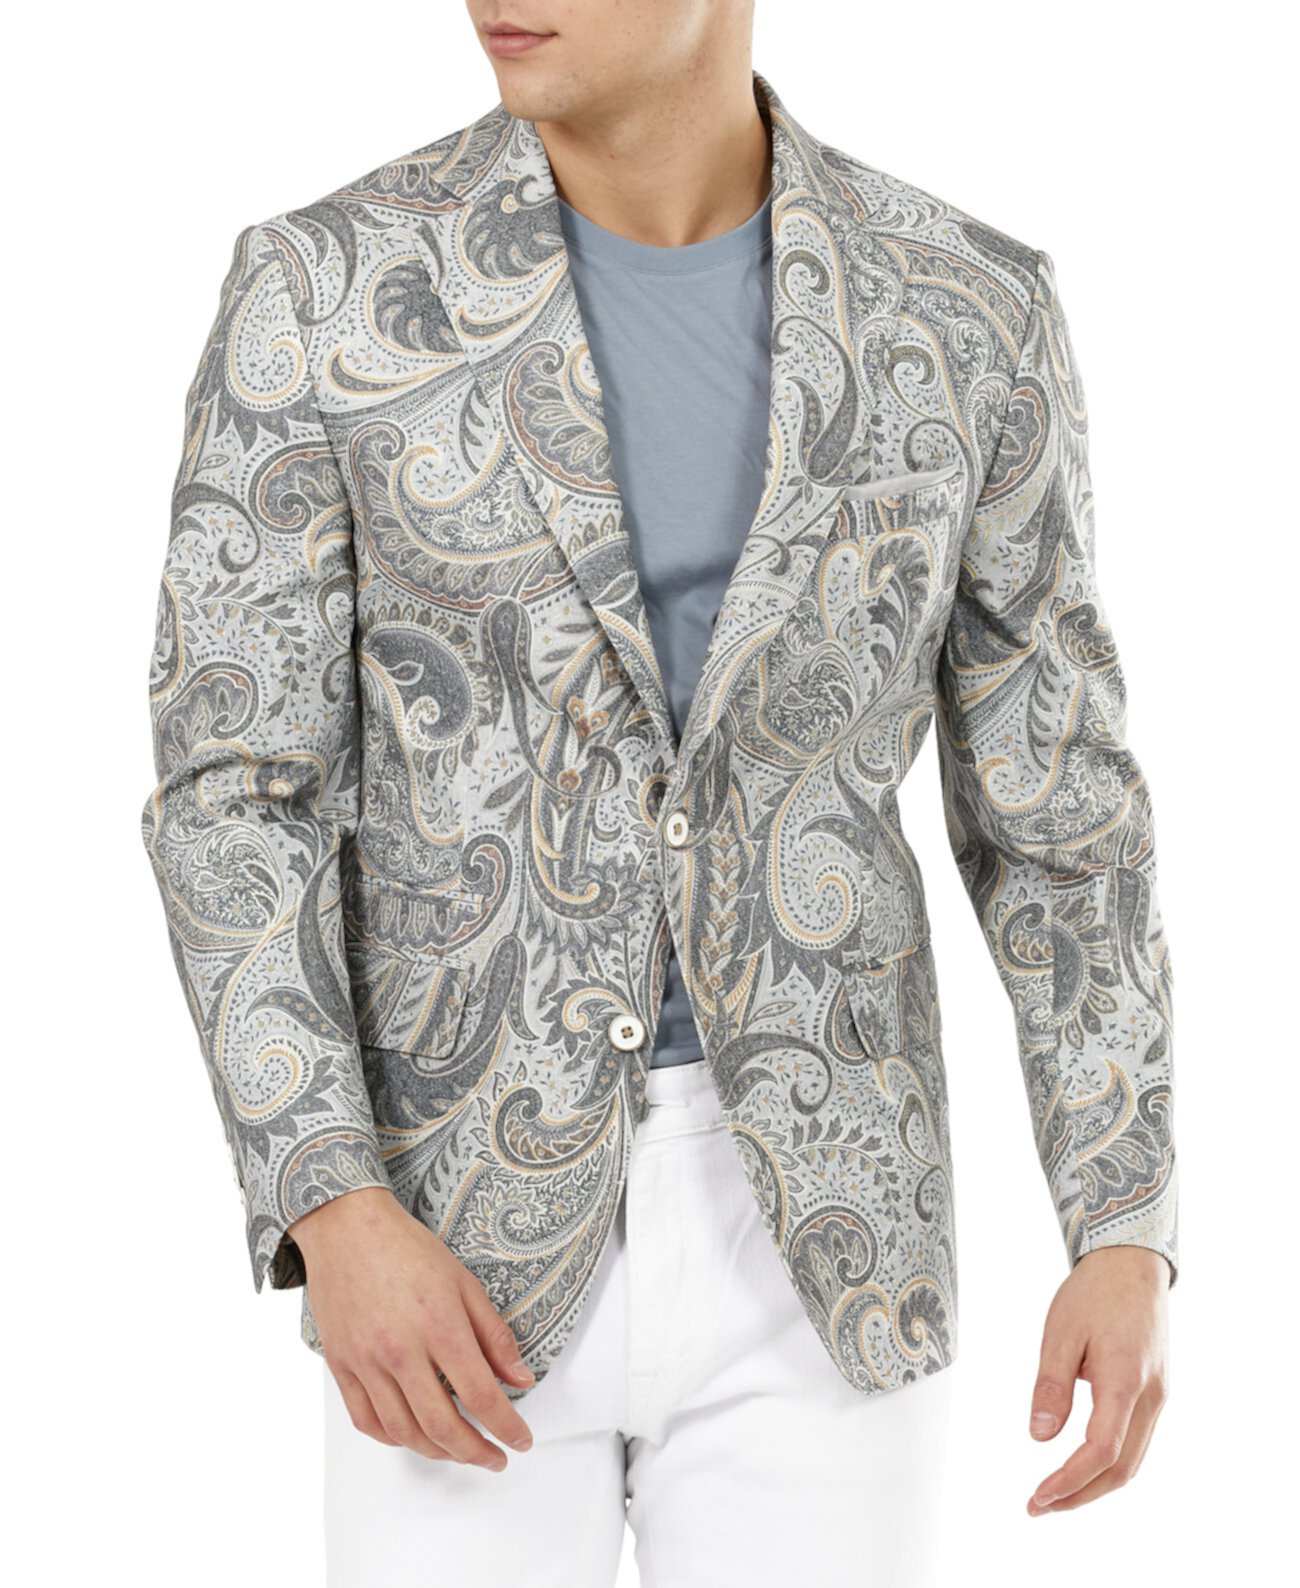 Мужской приталенный серый и коричневый пиджак из хлопка с рисунком пейсли Tallia